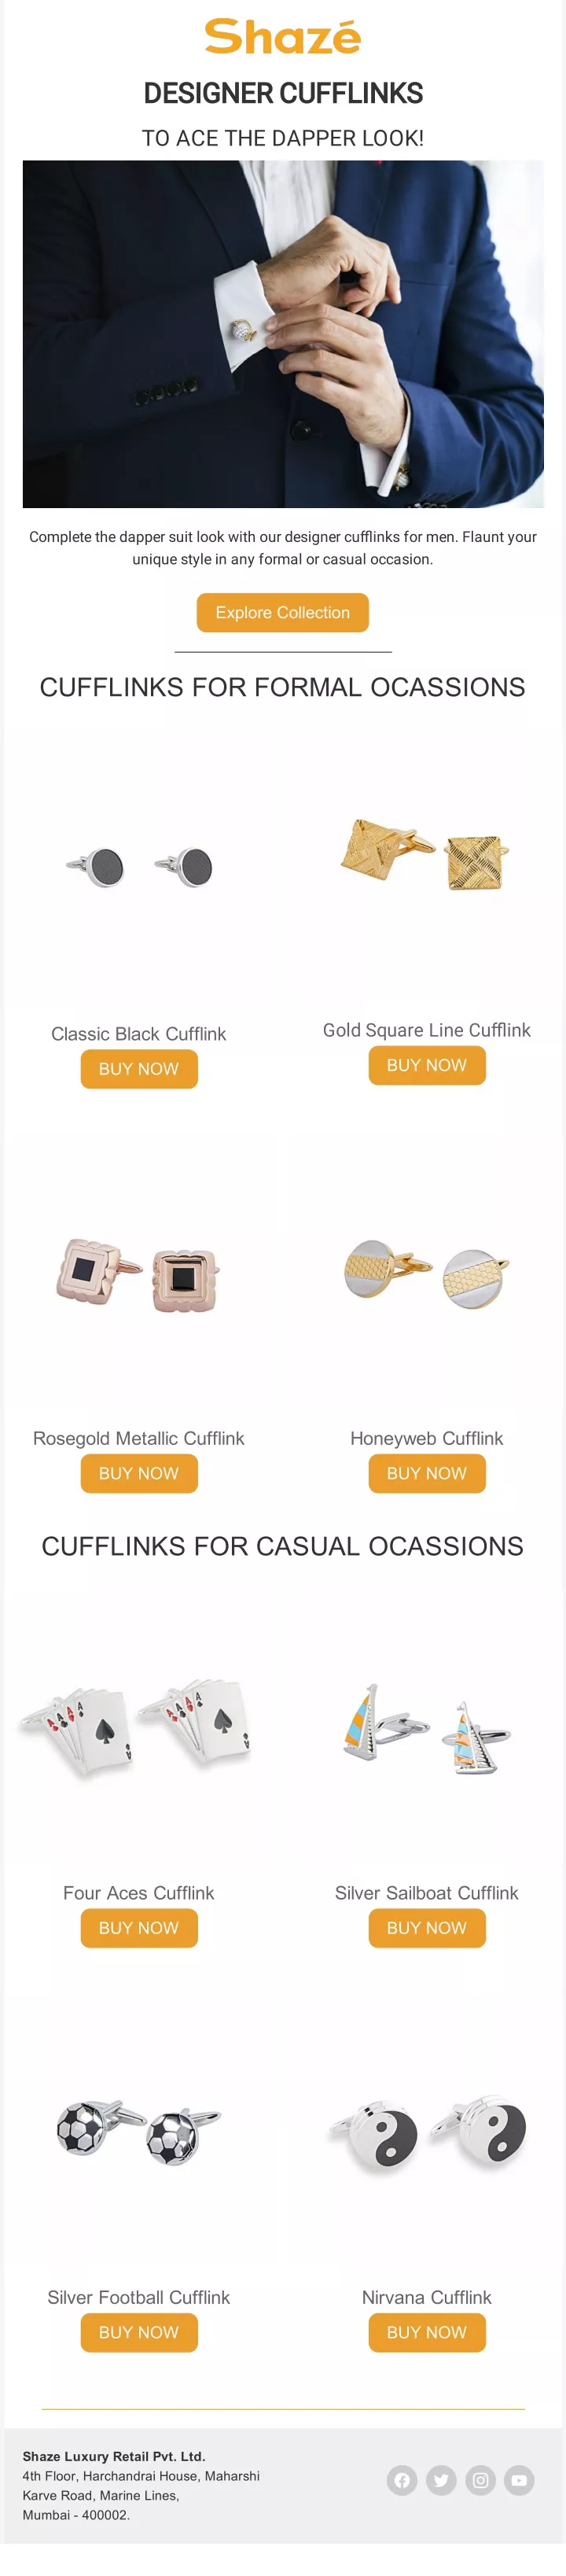 designer cufflinks